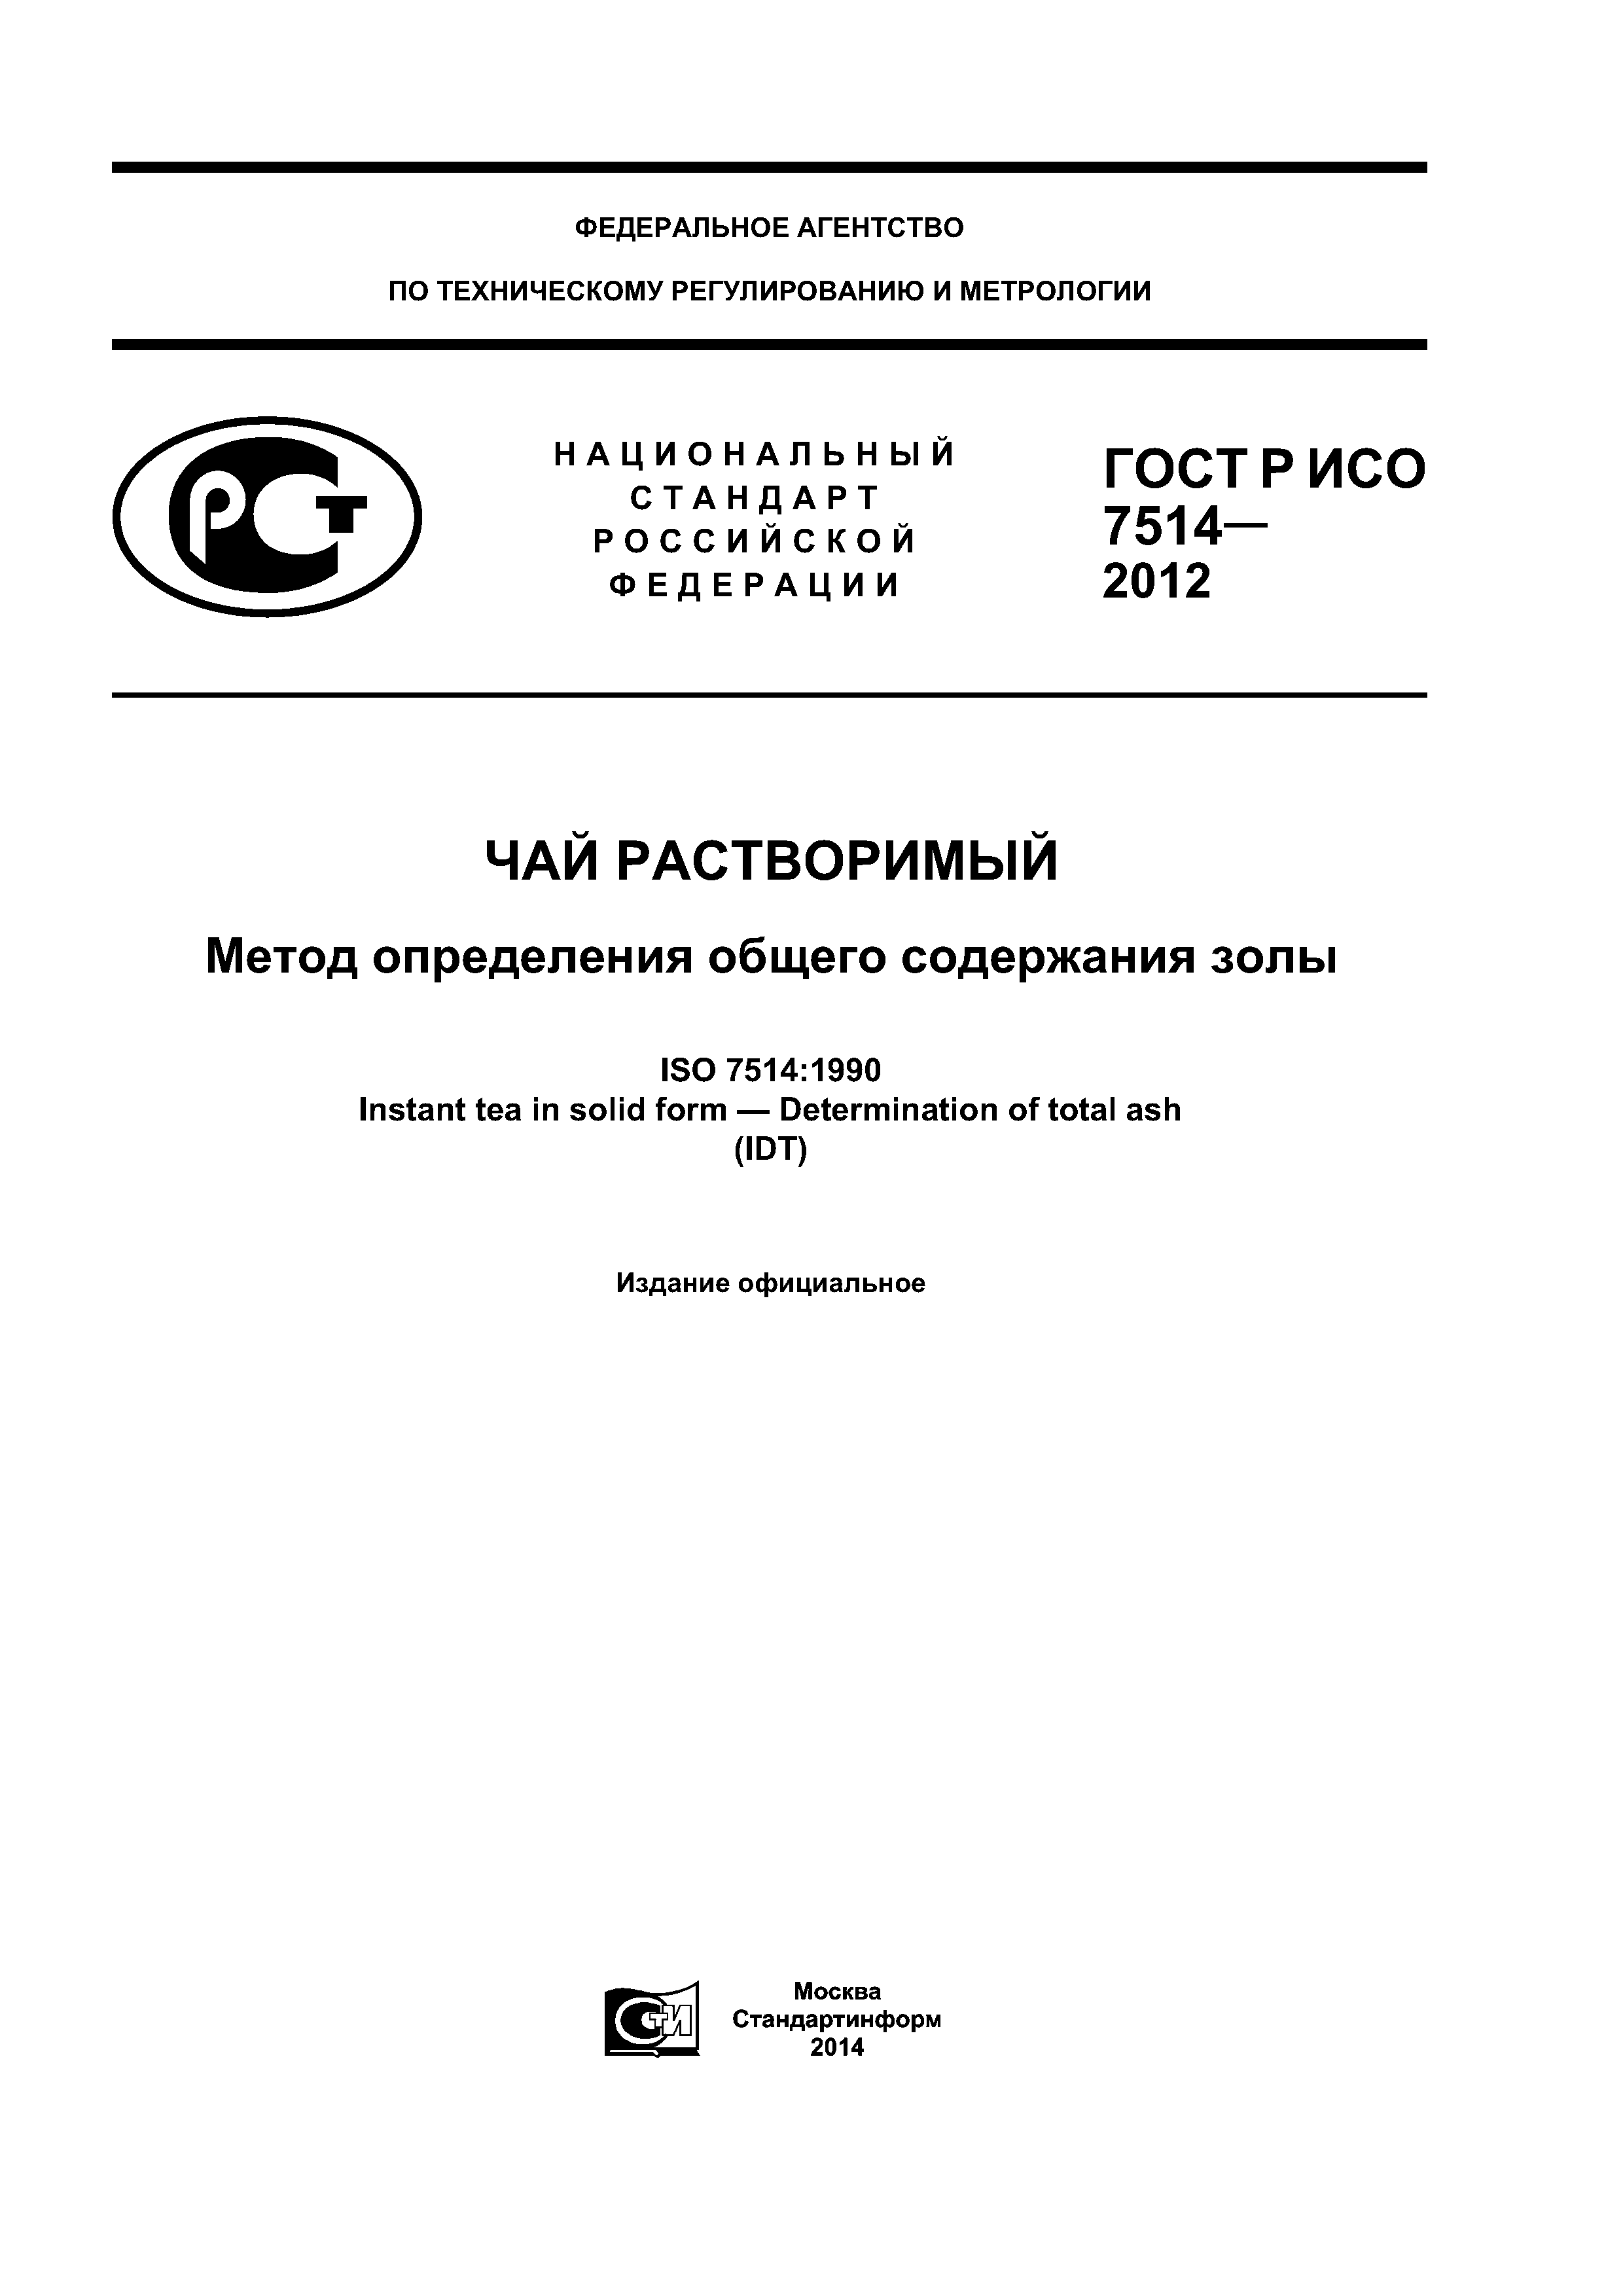 ГОСТ Р ИСО 7514-2012